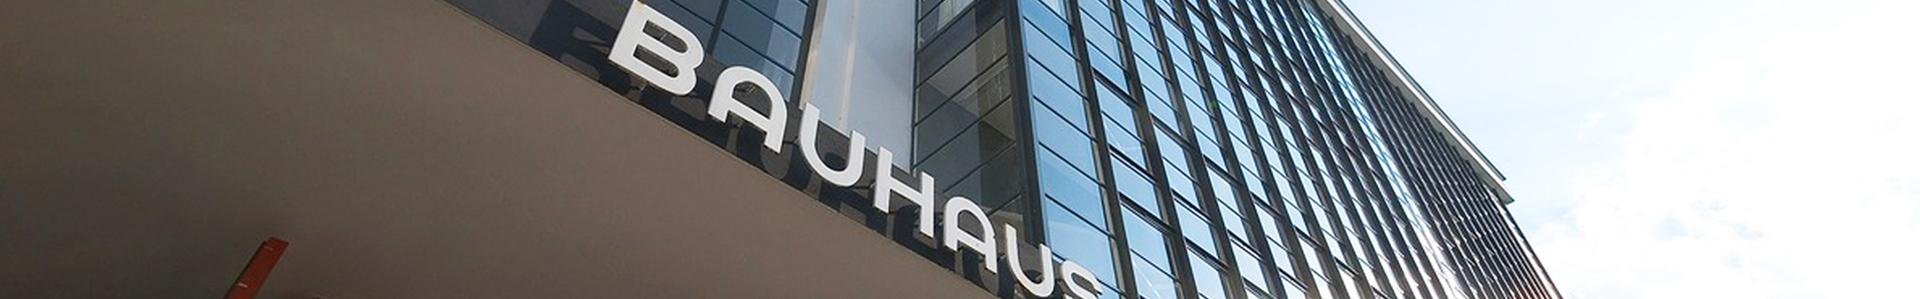 Bauhaus in Dessau, Duitsland